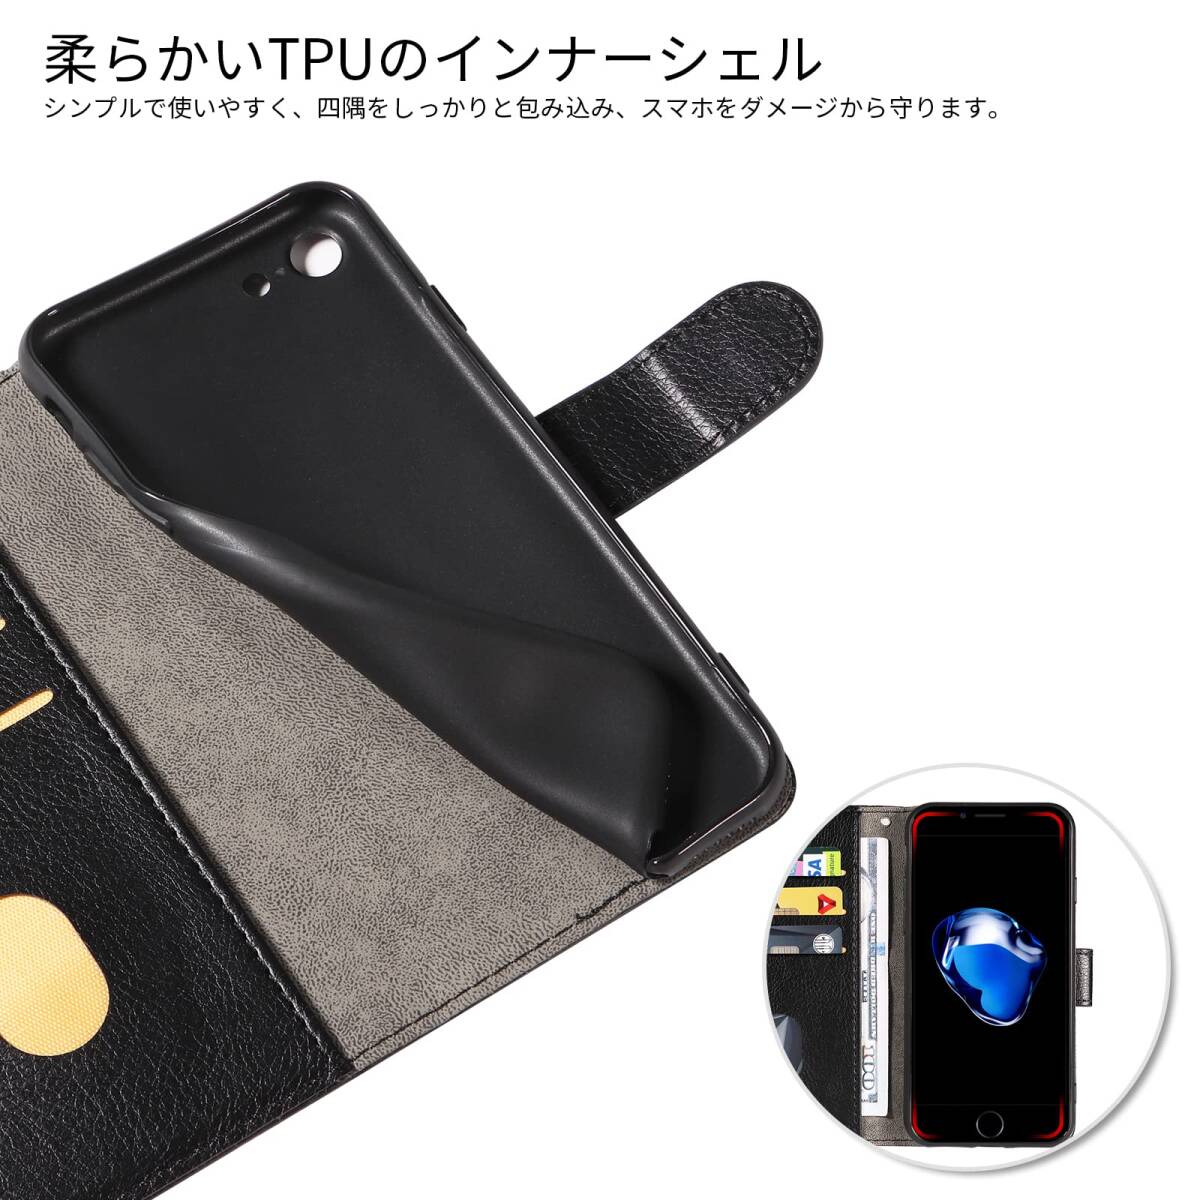 【注目商品】se3 iPhone スマホケース 携帯カバー レザー iPhone 軽量 薄型 iPhone7 耐衝撃 耐摩擦 iP_画像7